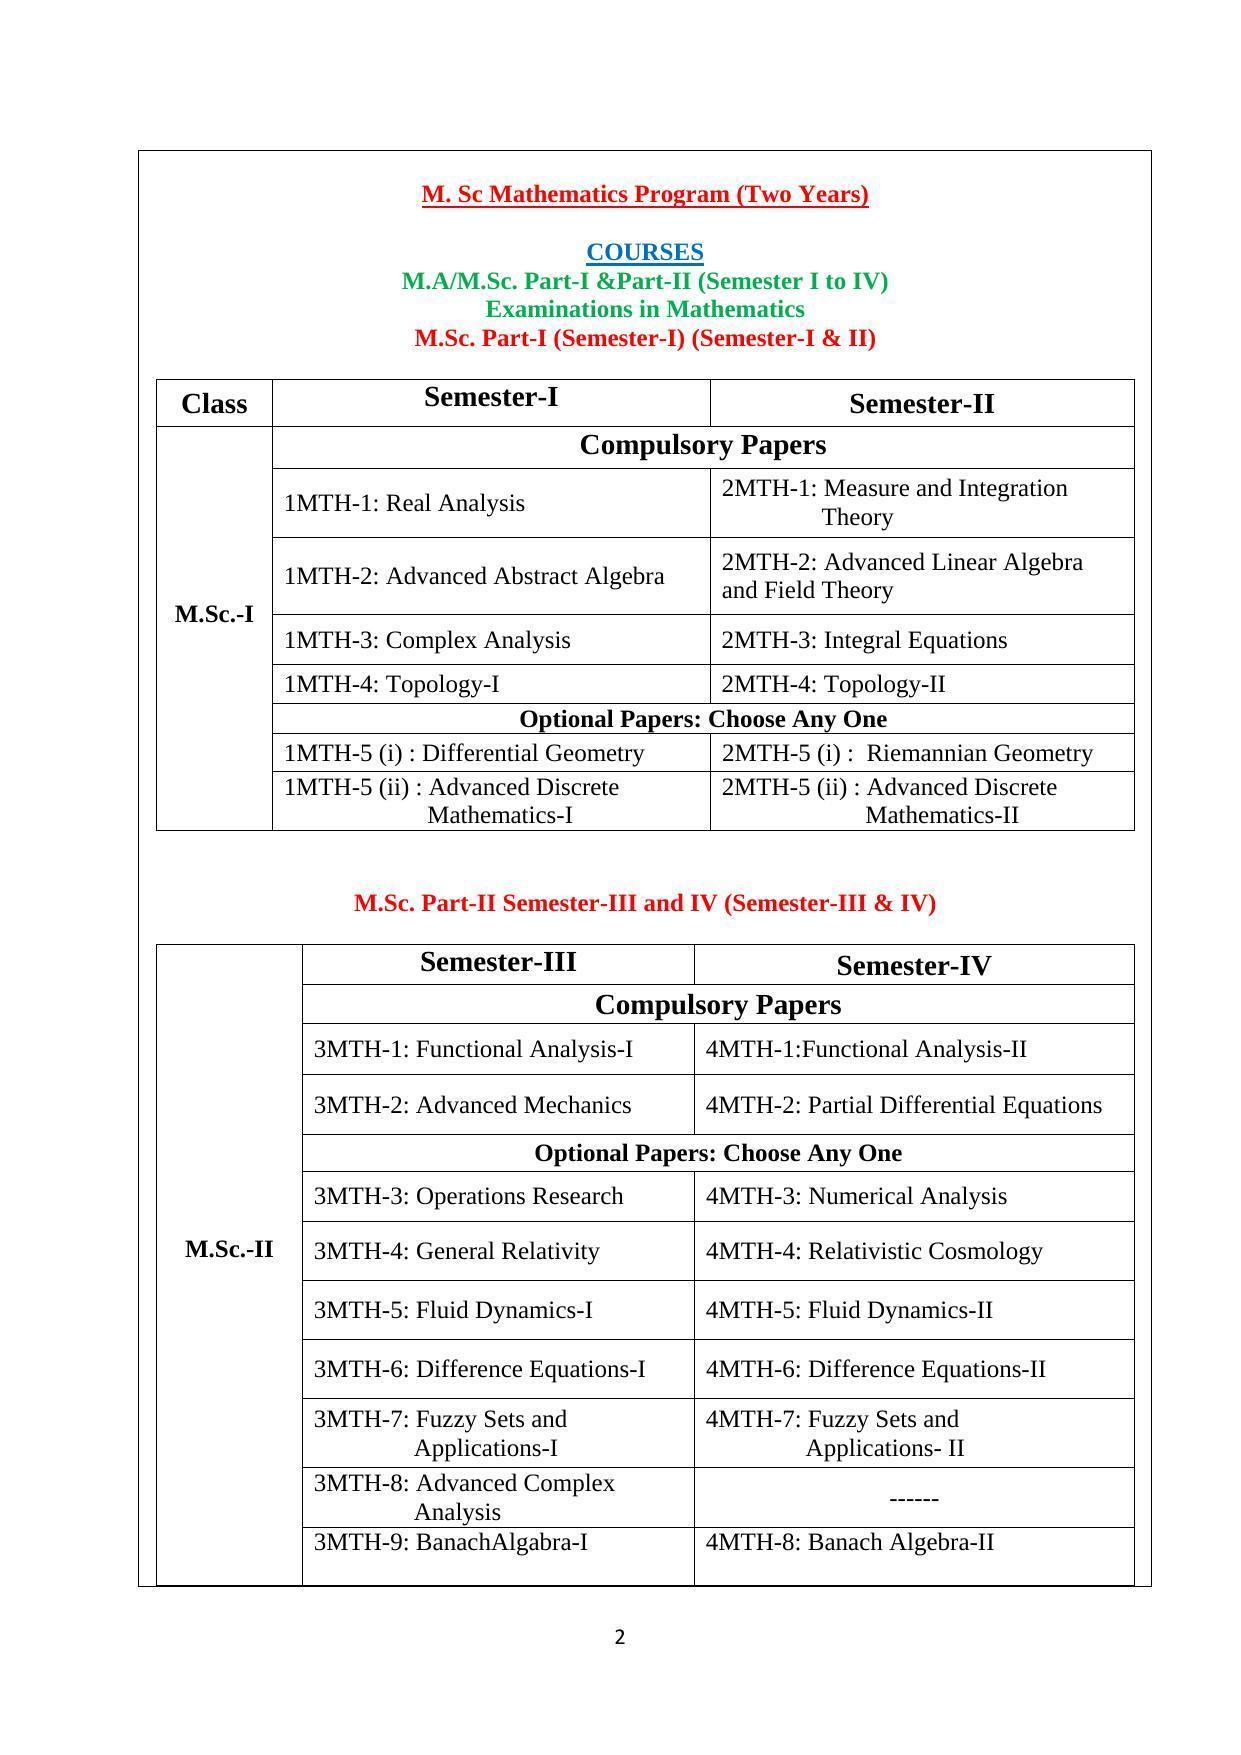 Dwonload Pdf - RTMNU Mathematics of M. Sc Mathematics Program (Two Years) Syllabus. - Page 1